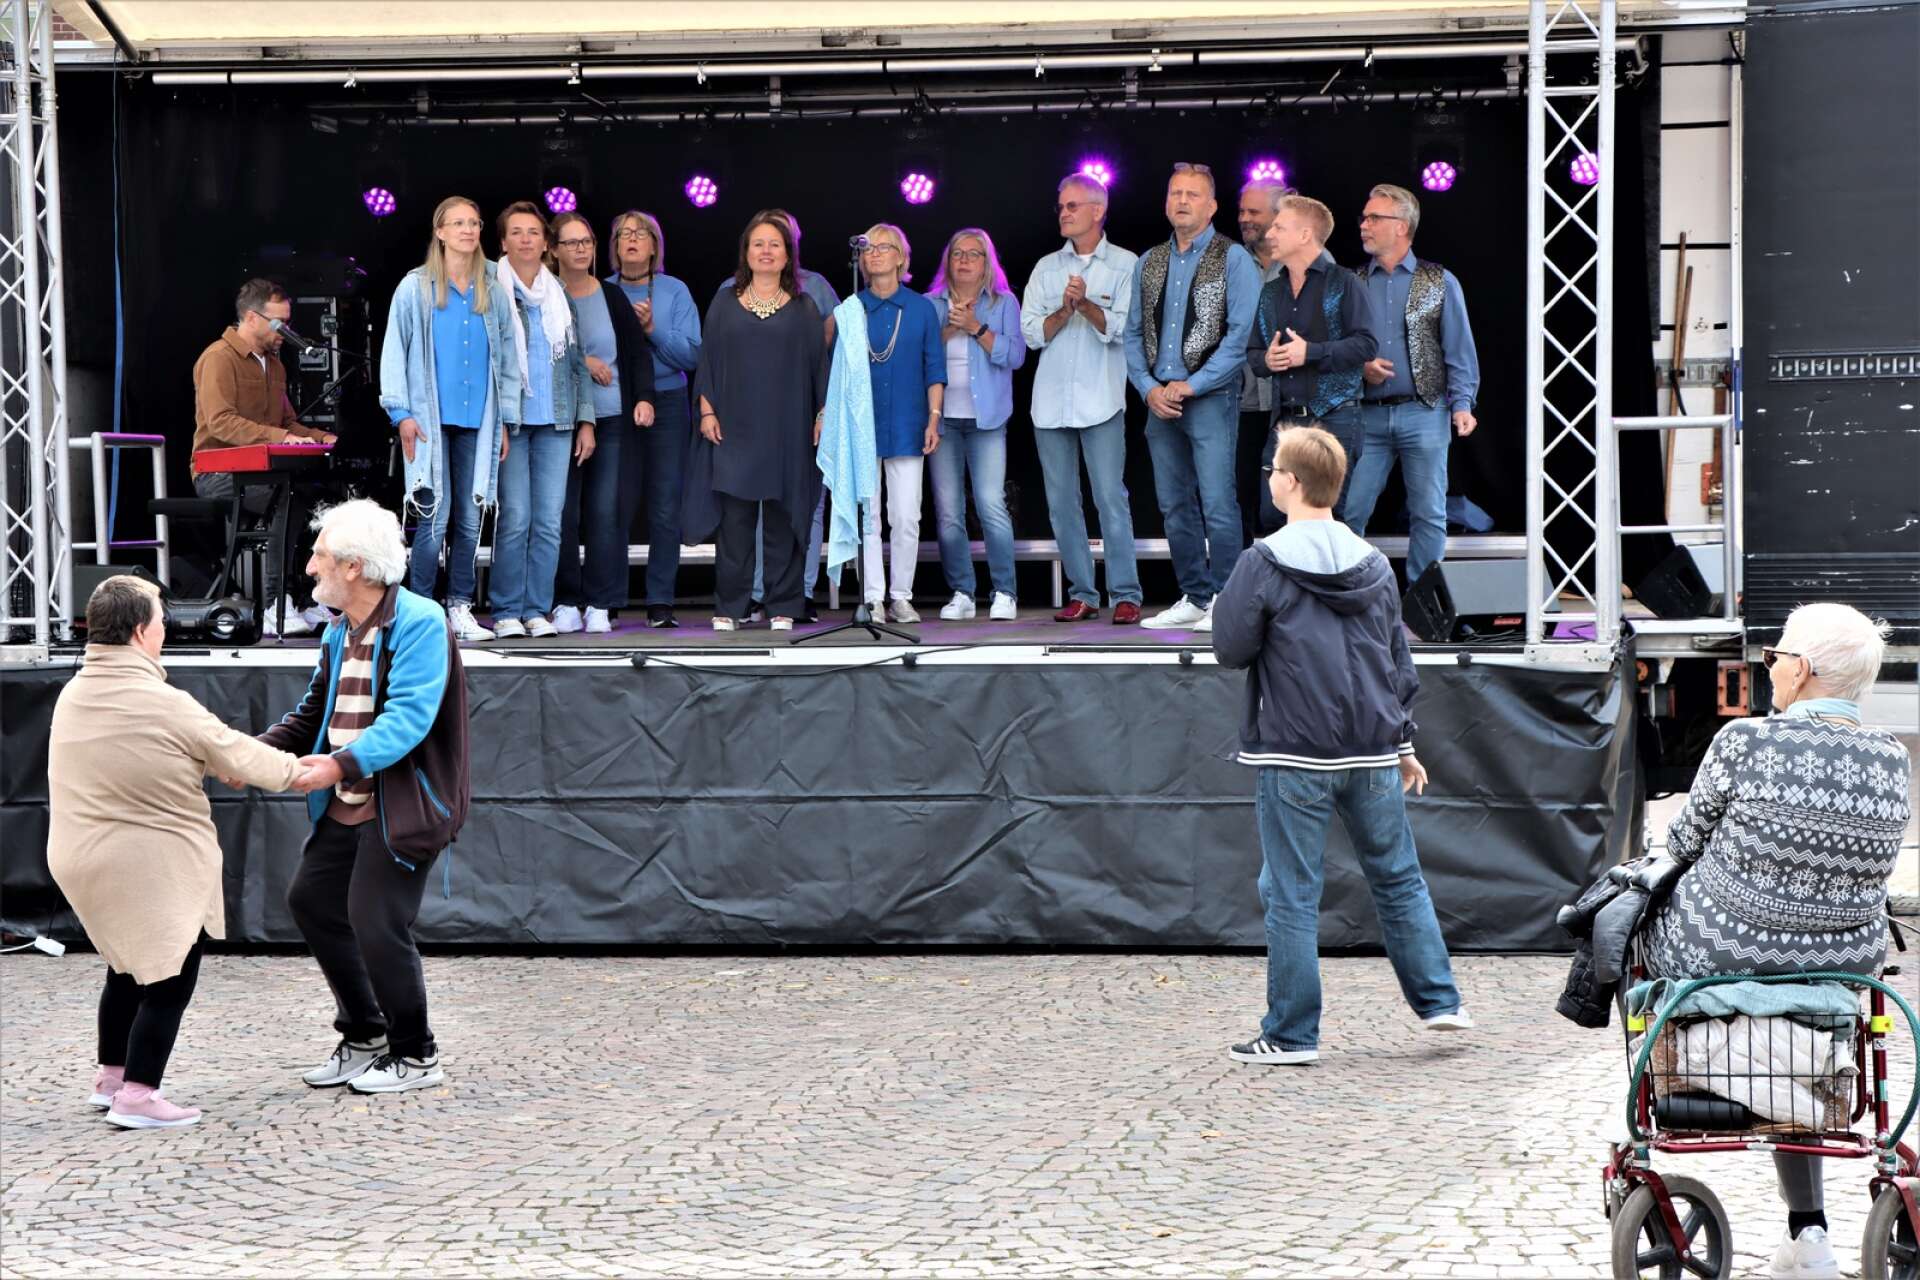 En del valde att ta en svängom framför scenen, bland annat då Öjebokören framförde Abba-låtar.